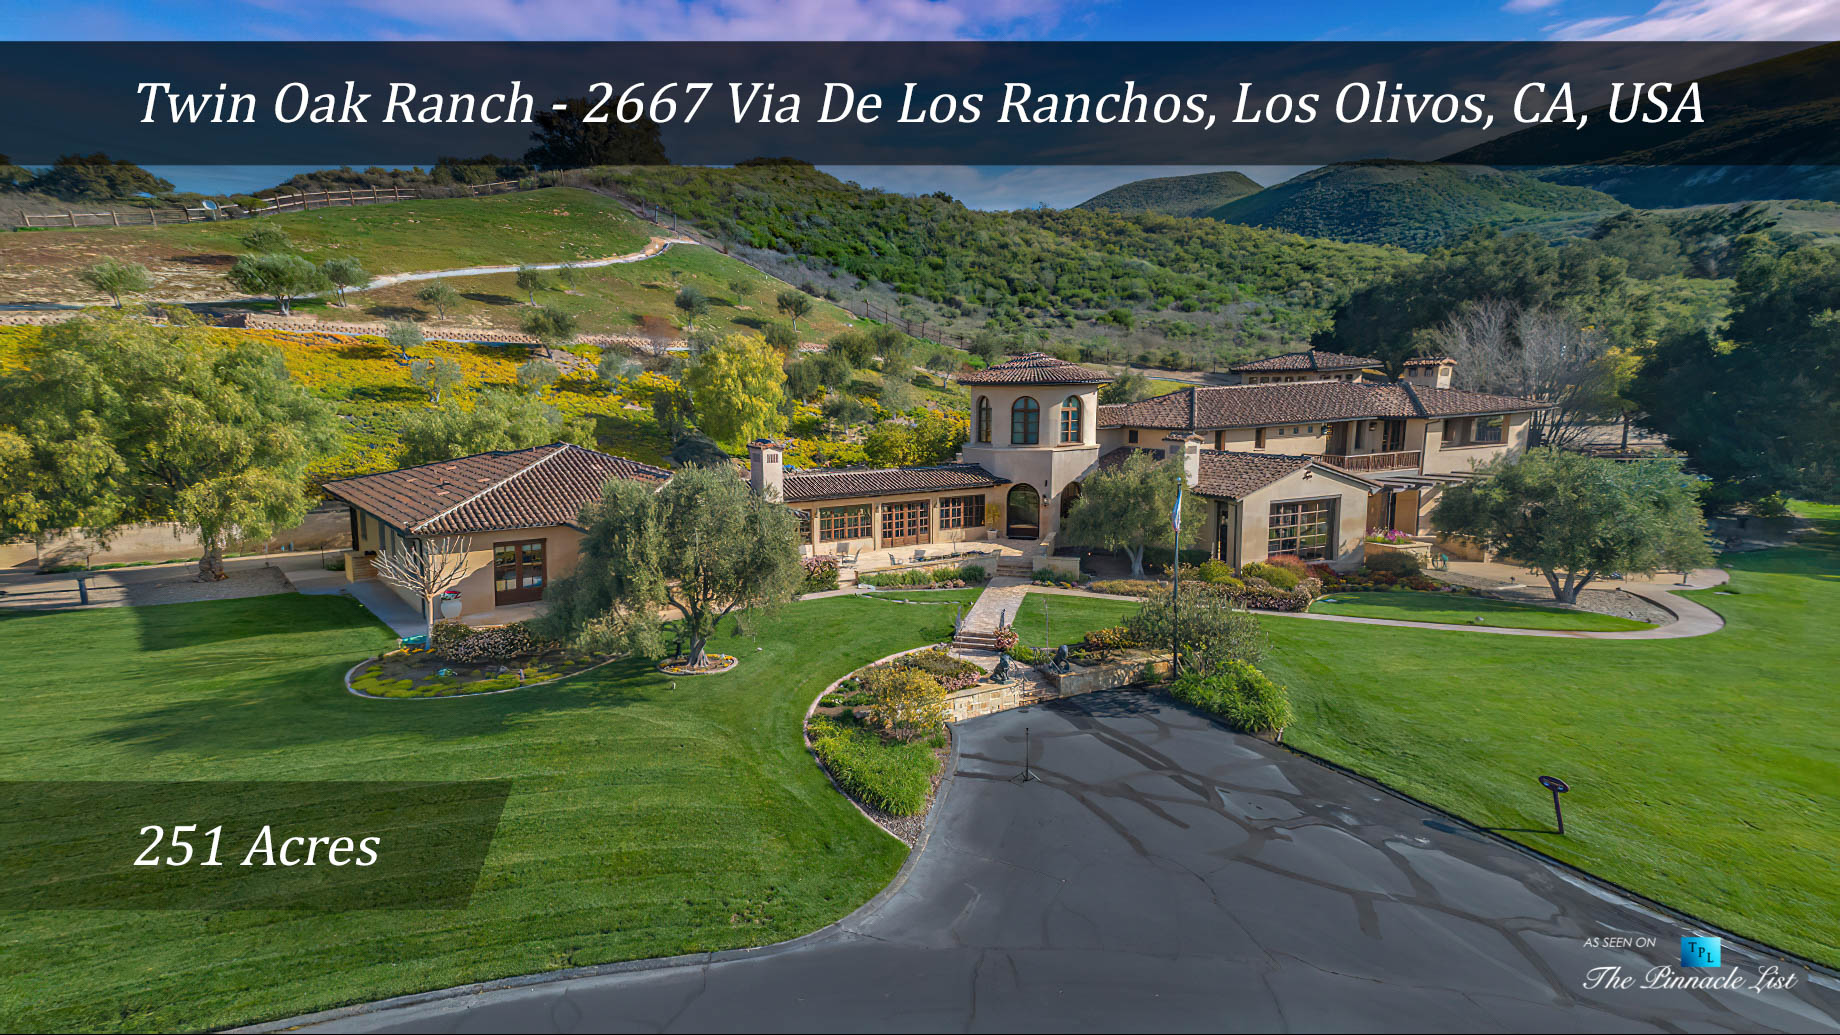 Spectacular 251 Acre Twin Oak Ranch - 2667 Via De Los Ranchos, Los Olivos, CA, USA